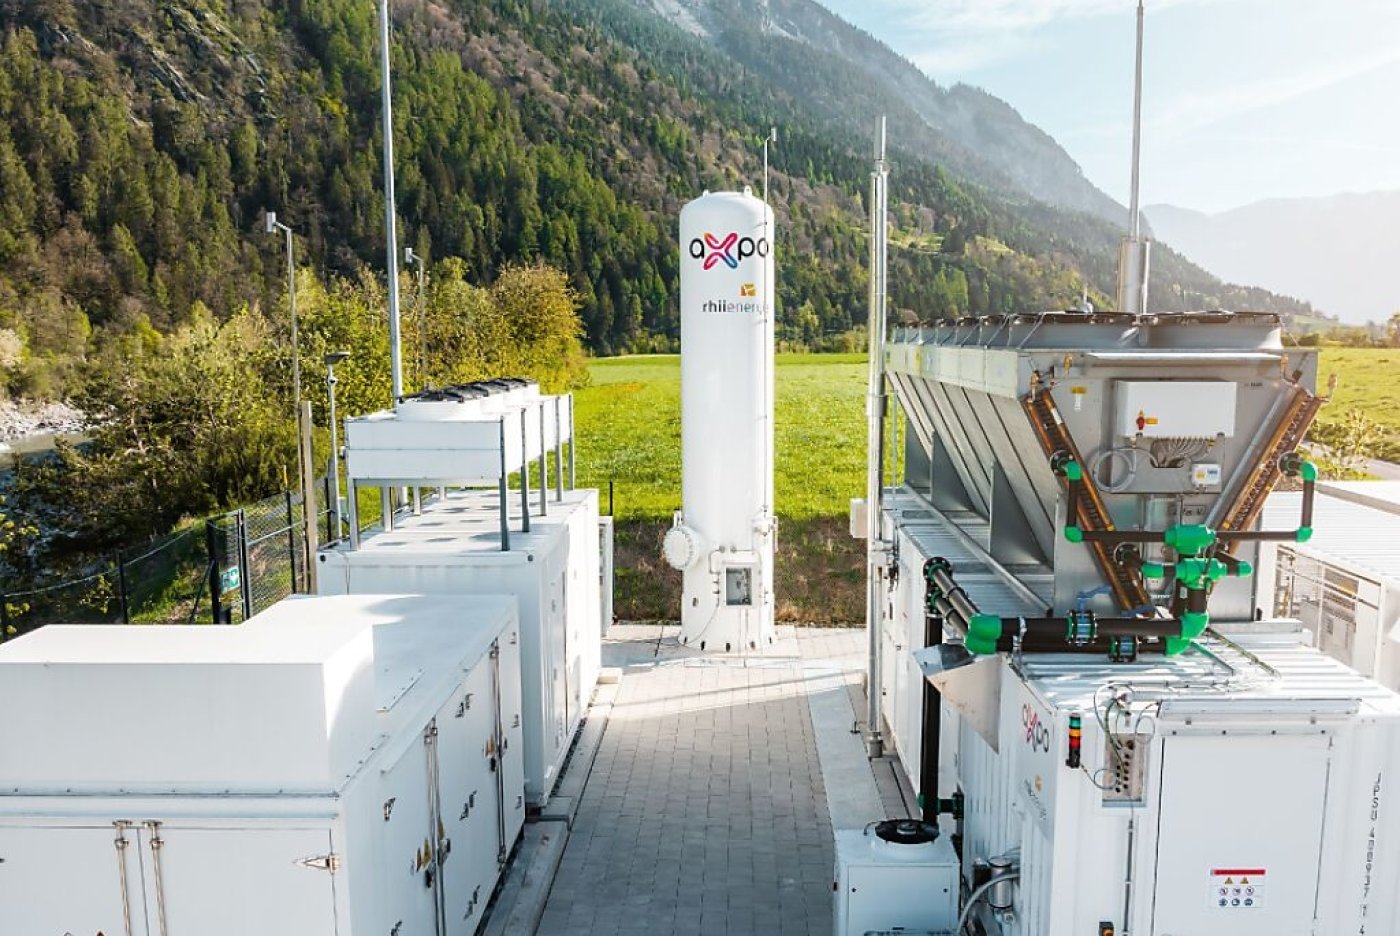 L'installation inaugurée vendredi se trouve au bord du Rhin, à proximité immédiate de la centrale hydraulique de Reichenau, à laquelle elle est directement connectée. Axpo